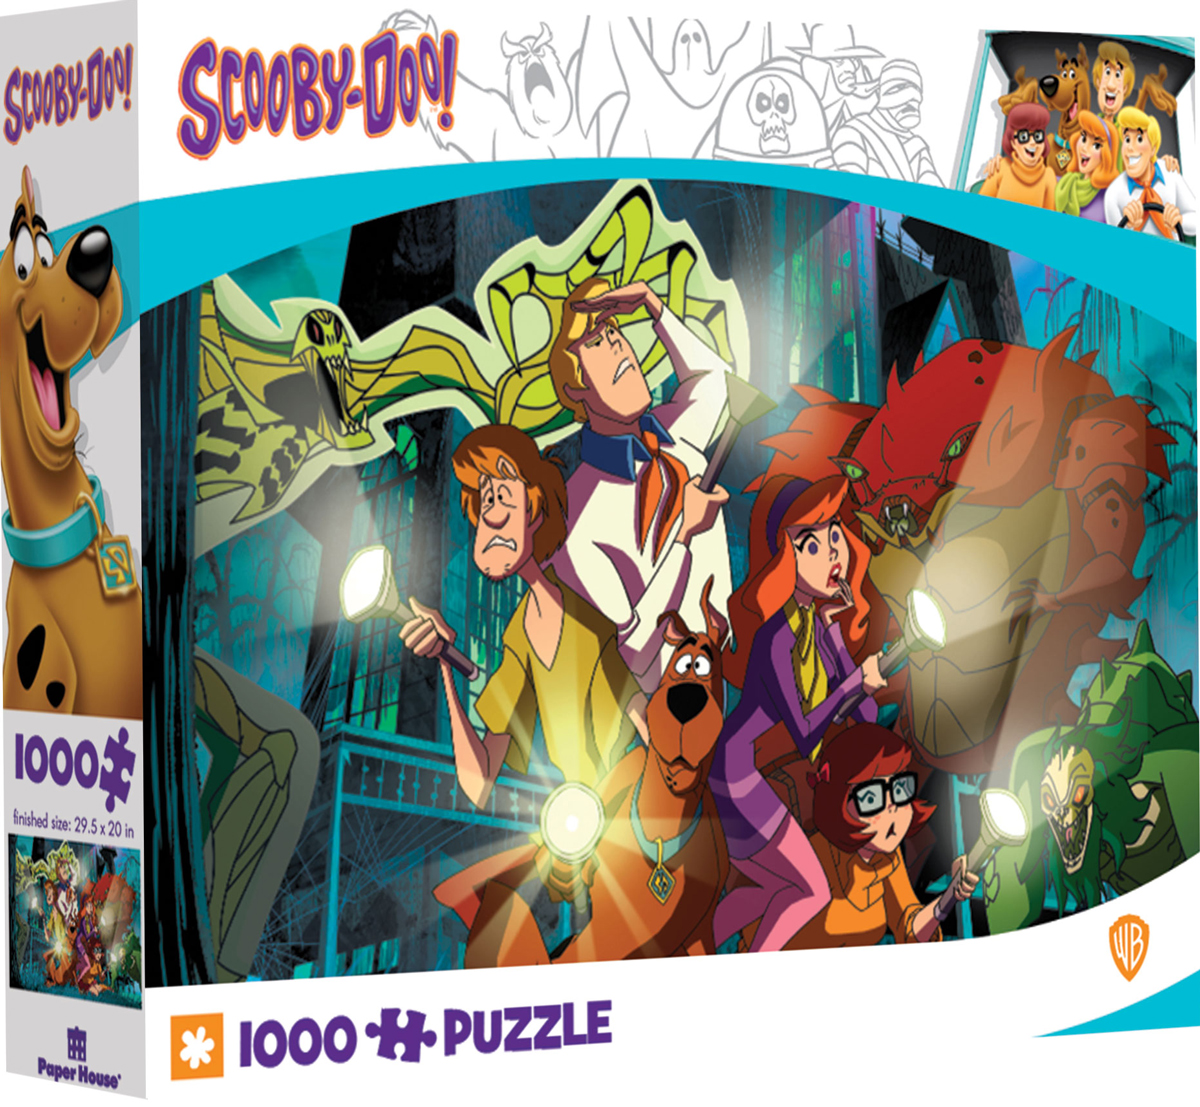 Scooby Doo Mystery Inc.